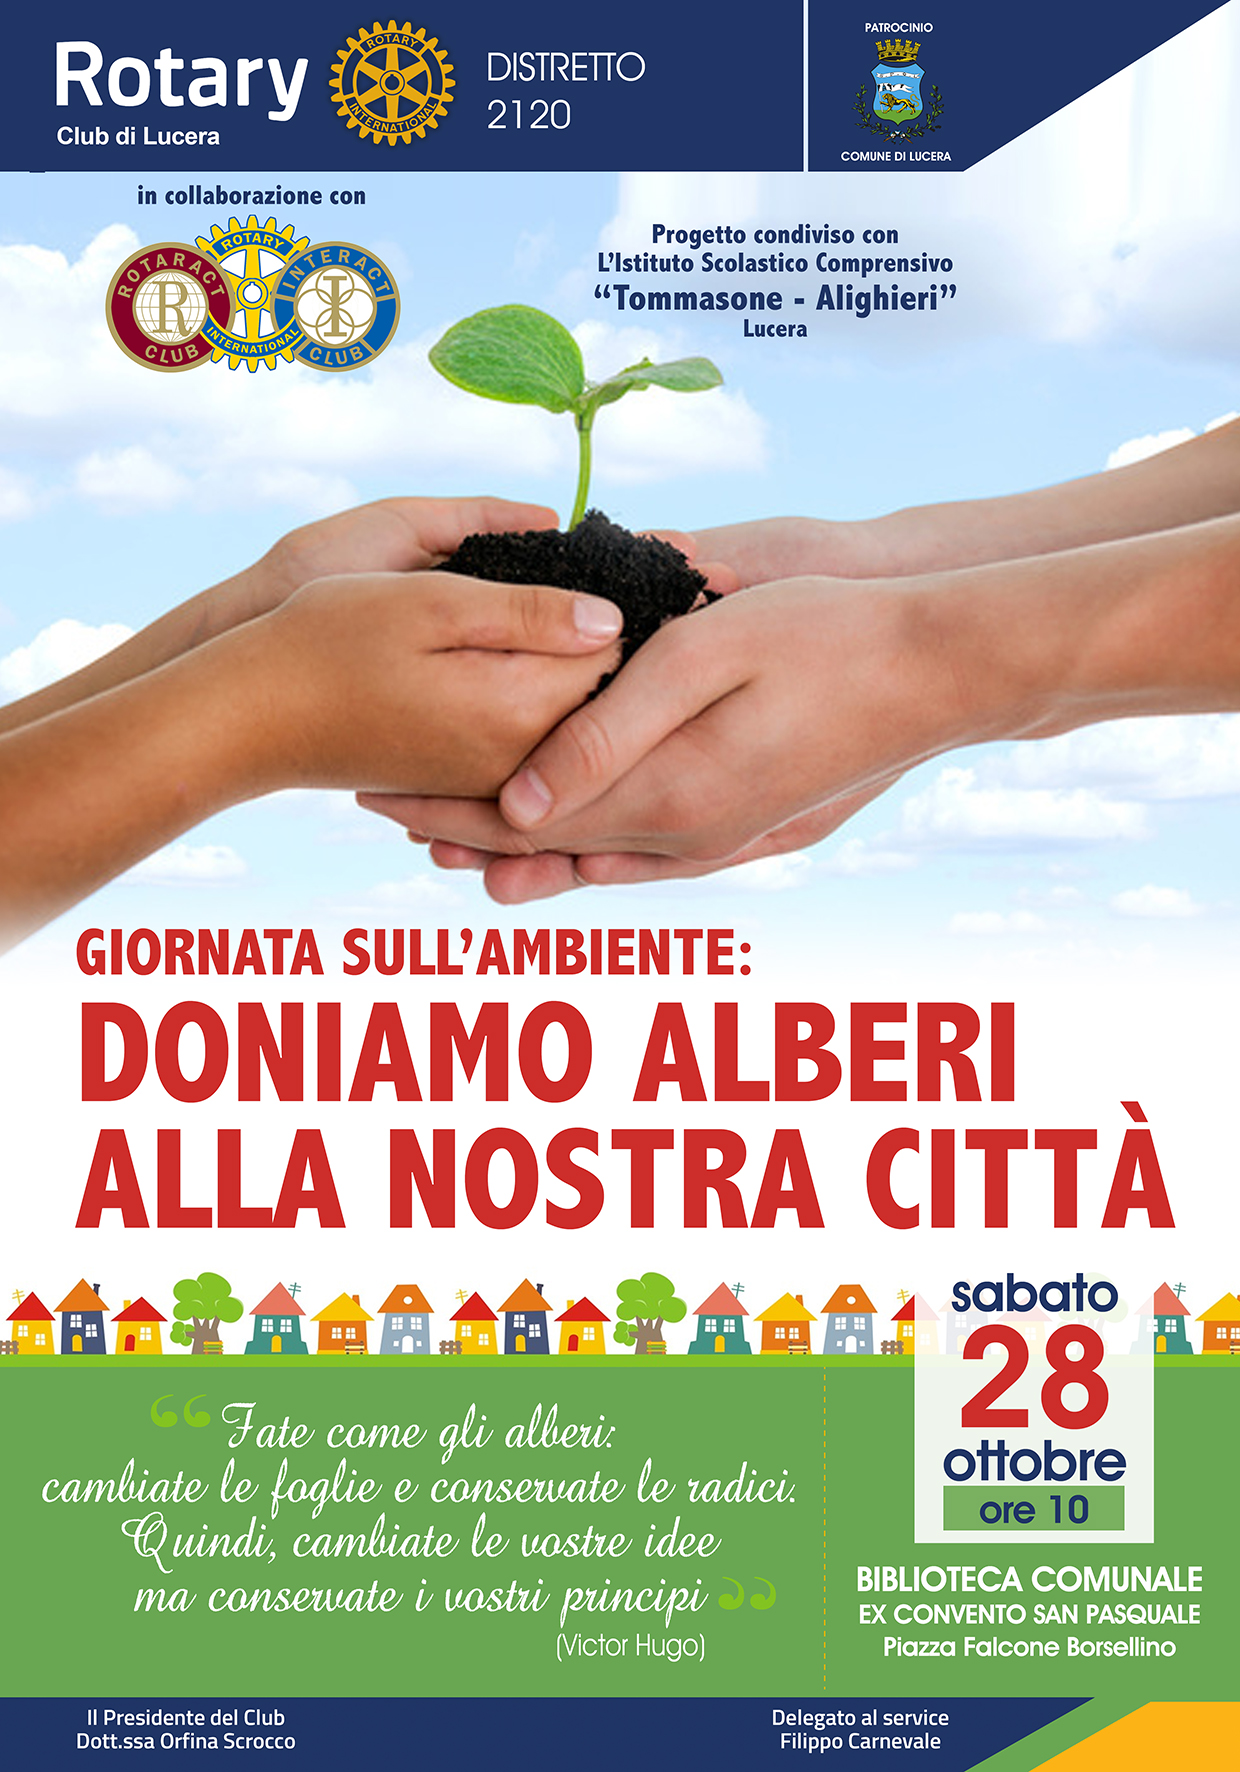 Il Rotary Club Lucera dona 31 alberi alla città